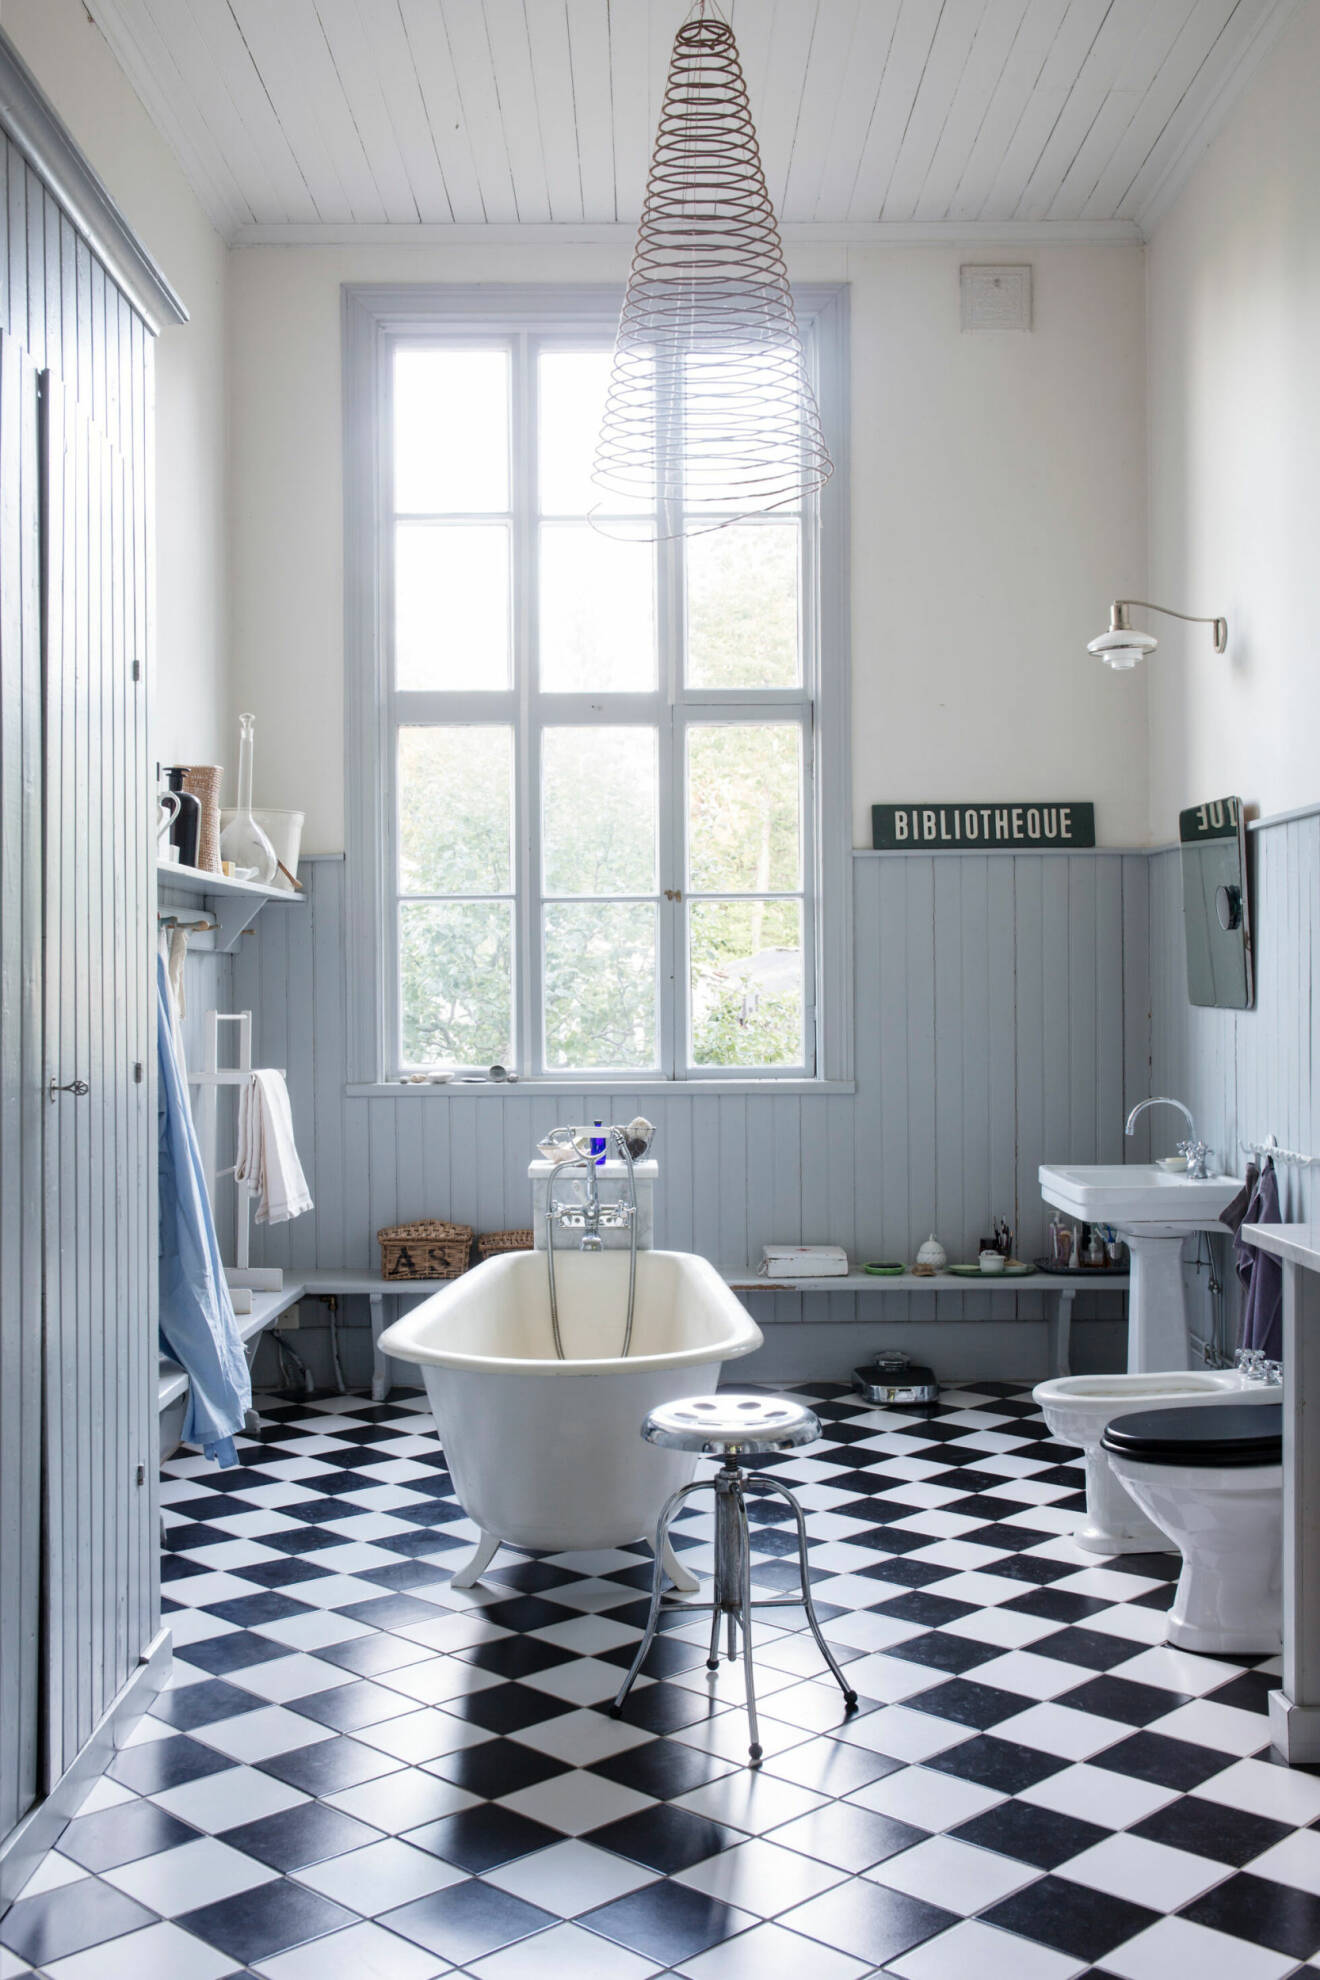 Badrummet har svartvitrutigt golv och väggar i vita och ljusblåa toner